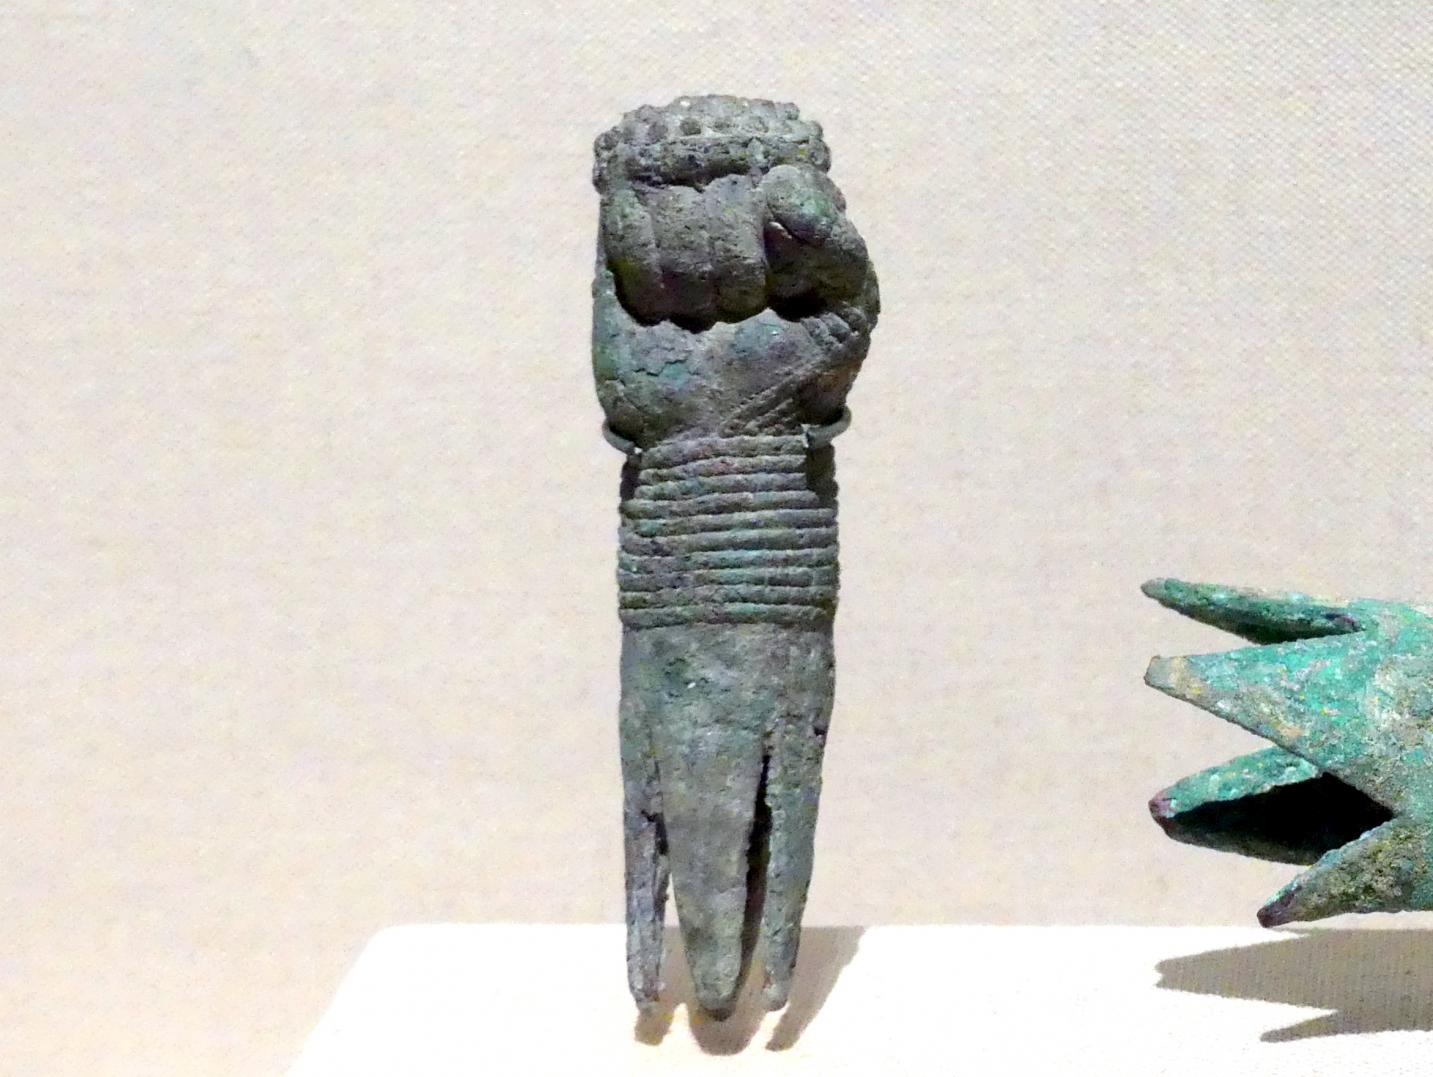 Objekt in Form einer geballten Faust, 2200 - 1800 v. Chr.